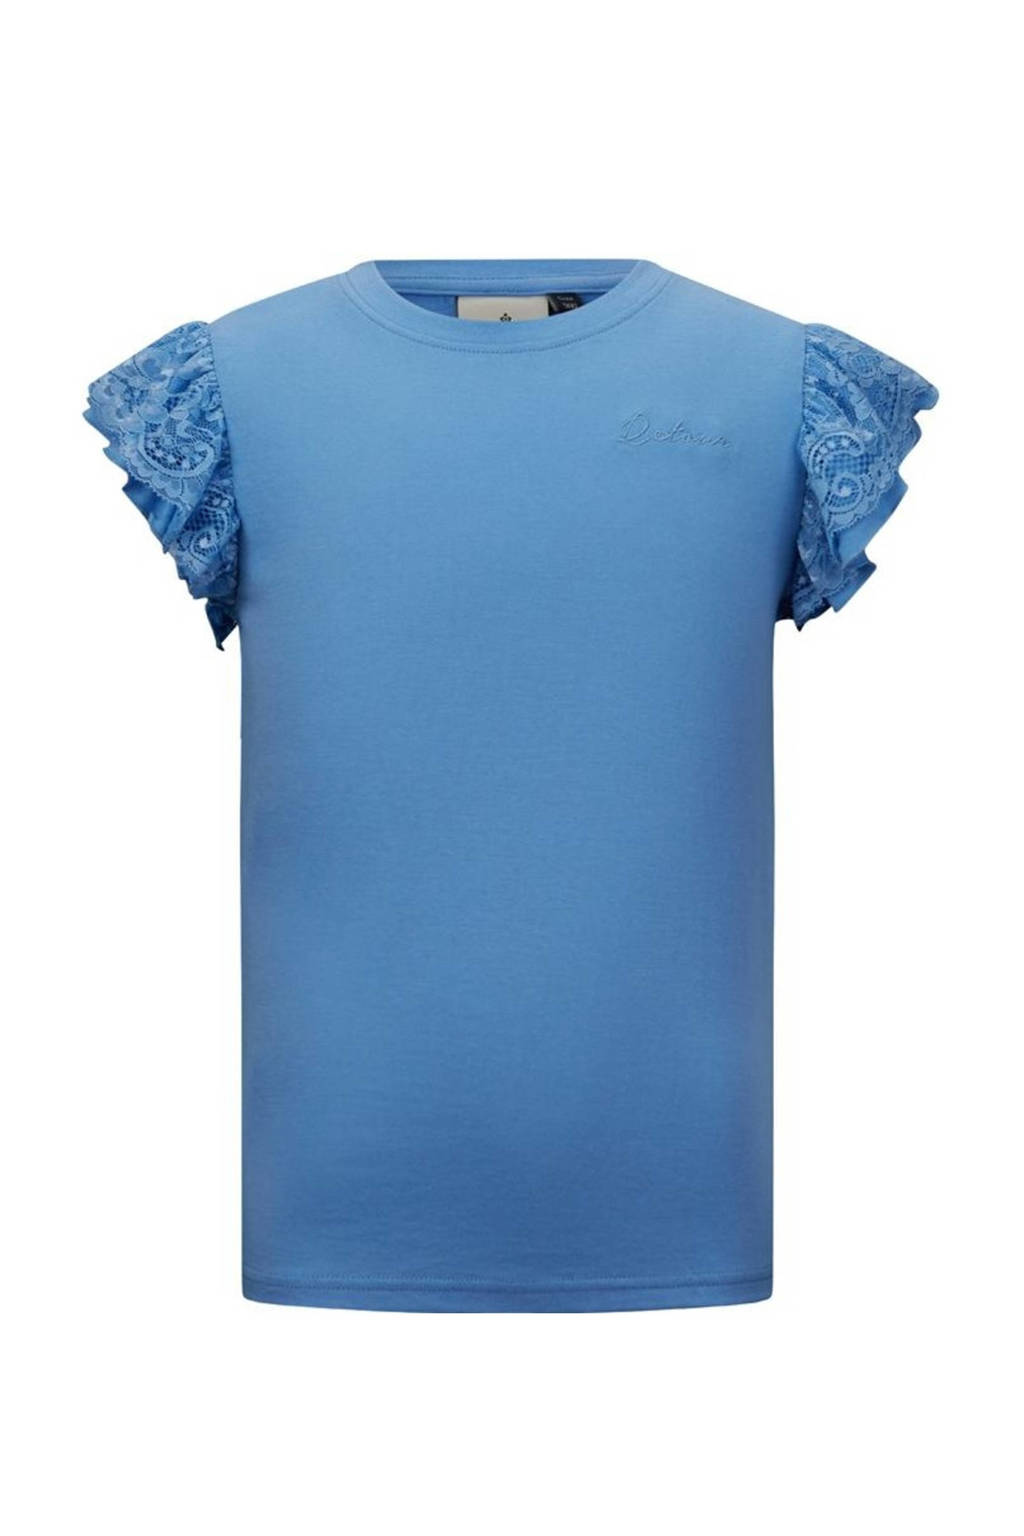 Retour Denim T-shirt Merle met kant blauw